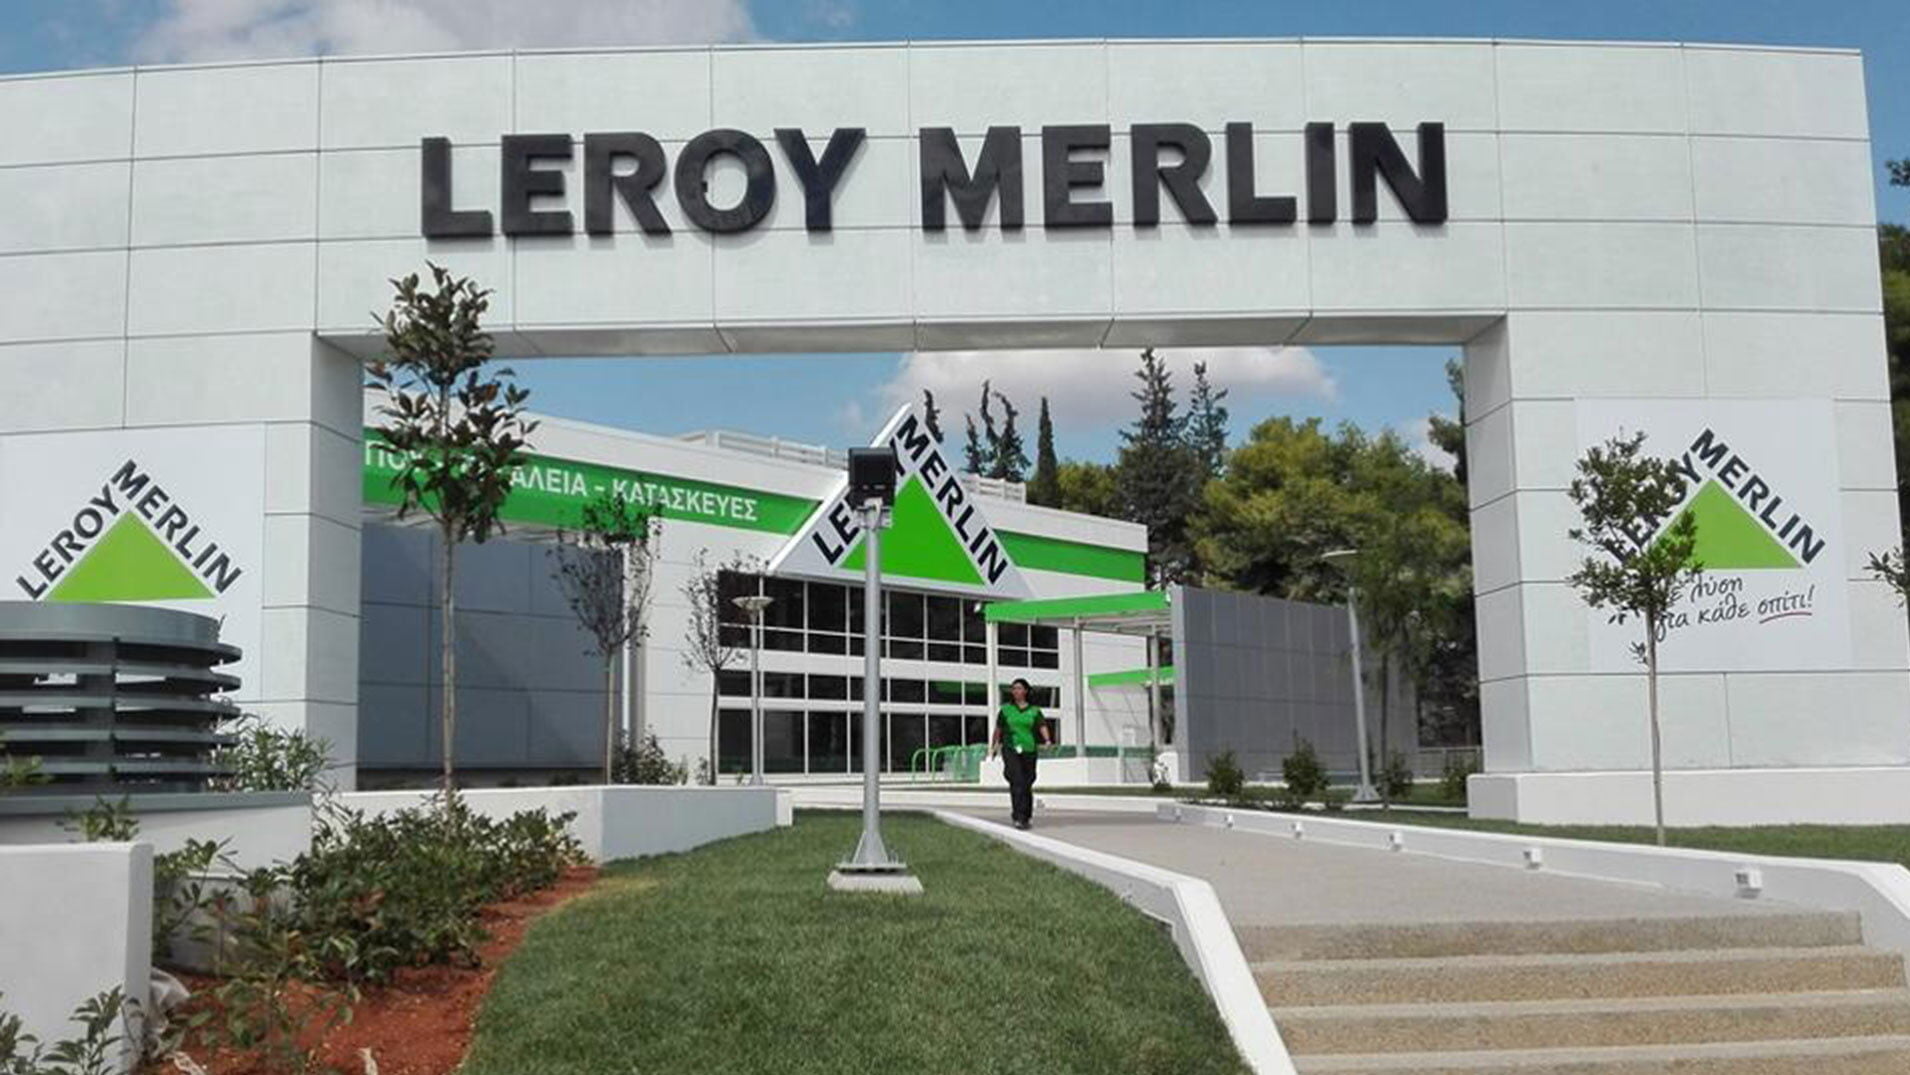 Leroy Merlin: Ευκαιρίες για υποψηφίους πέντε ειδικοτήτων